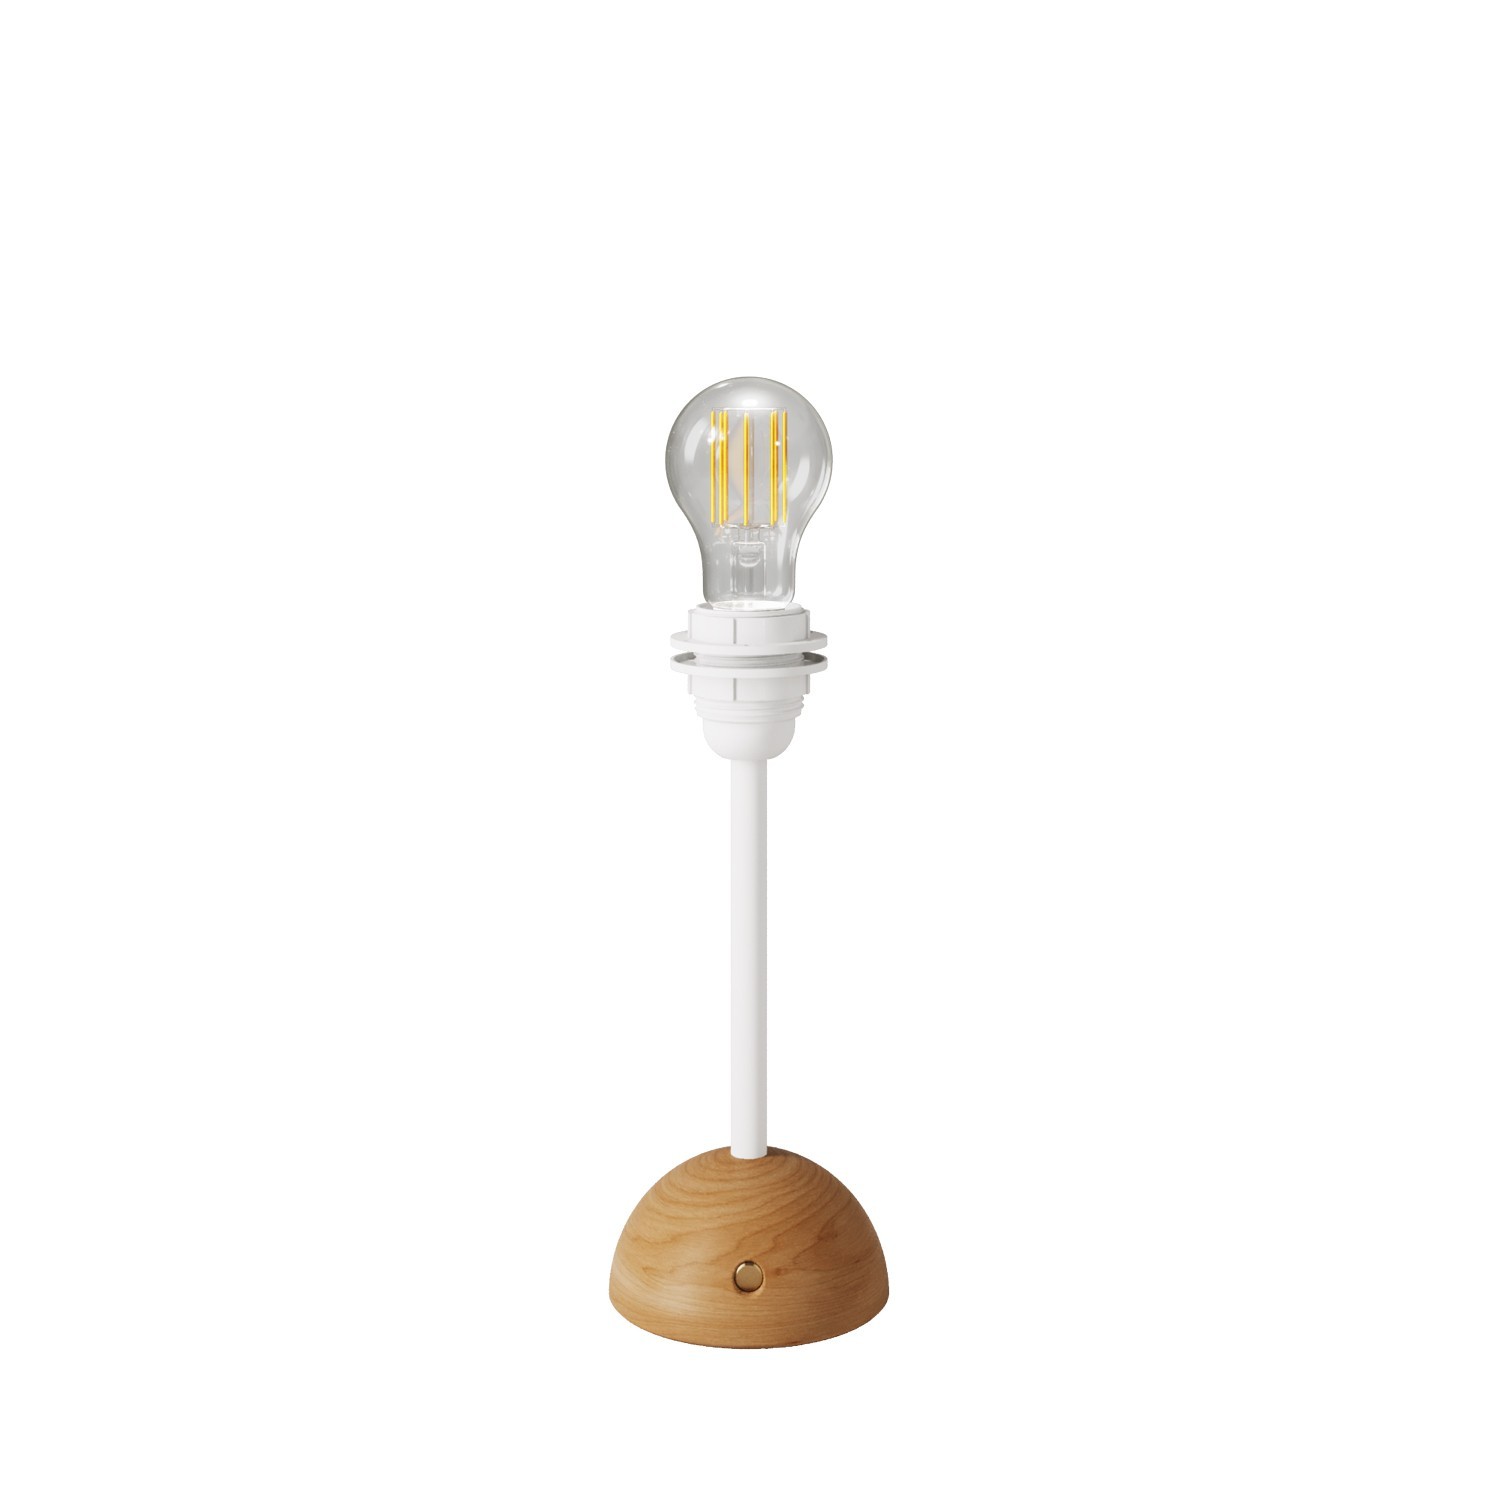 Cabless12 bärbar och uppladdningsbar lampa med droppformad ljuskälla och lampskärmsfäste